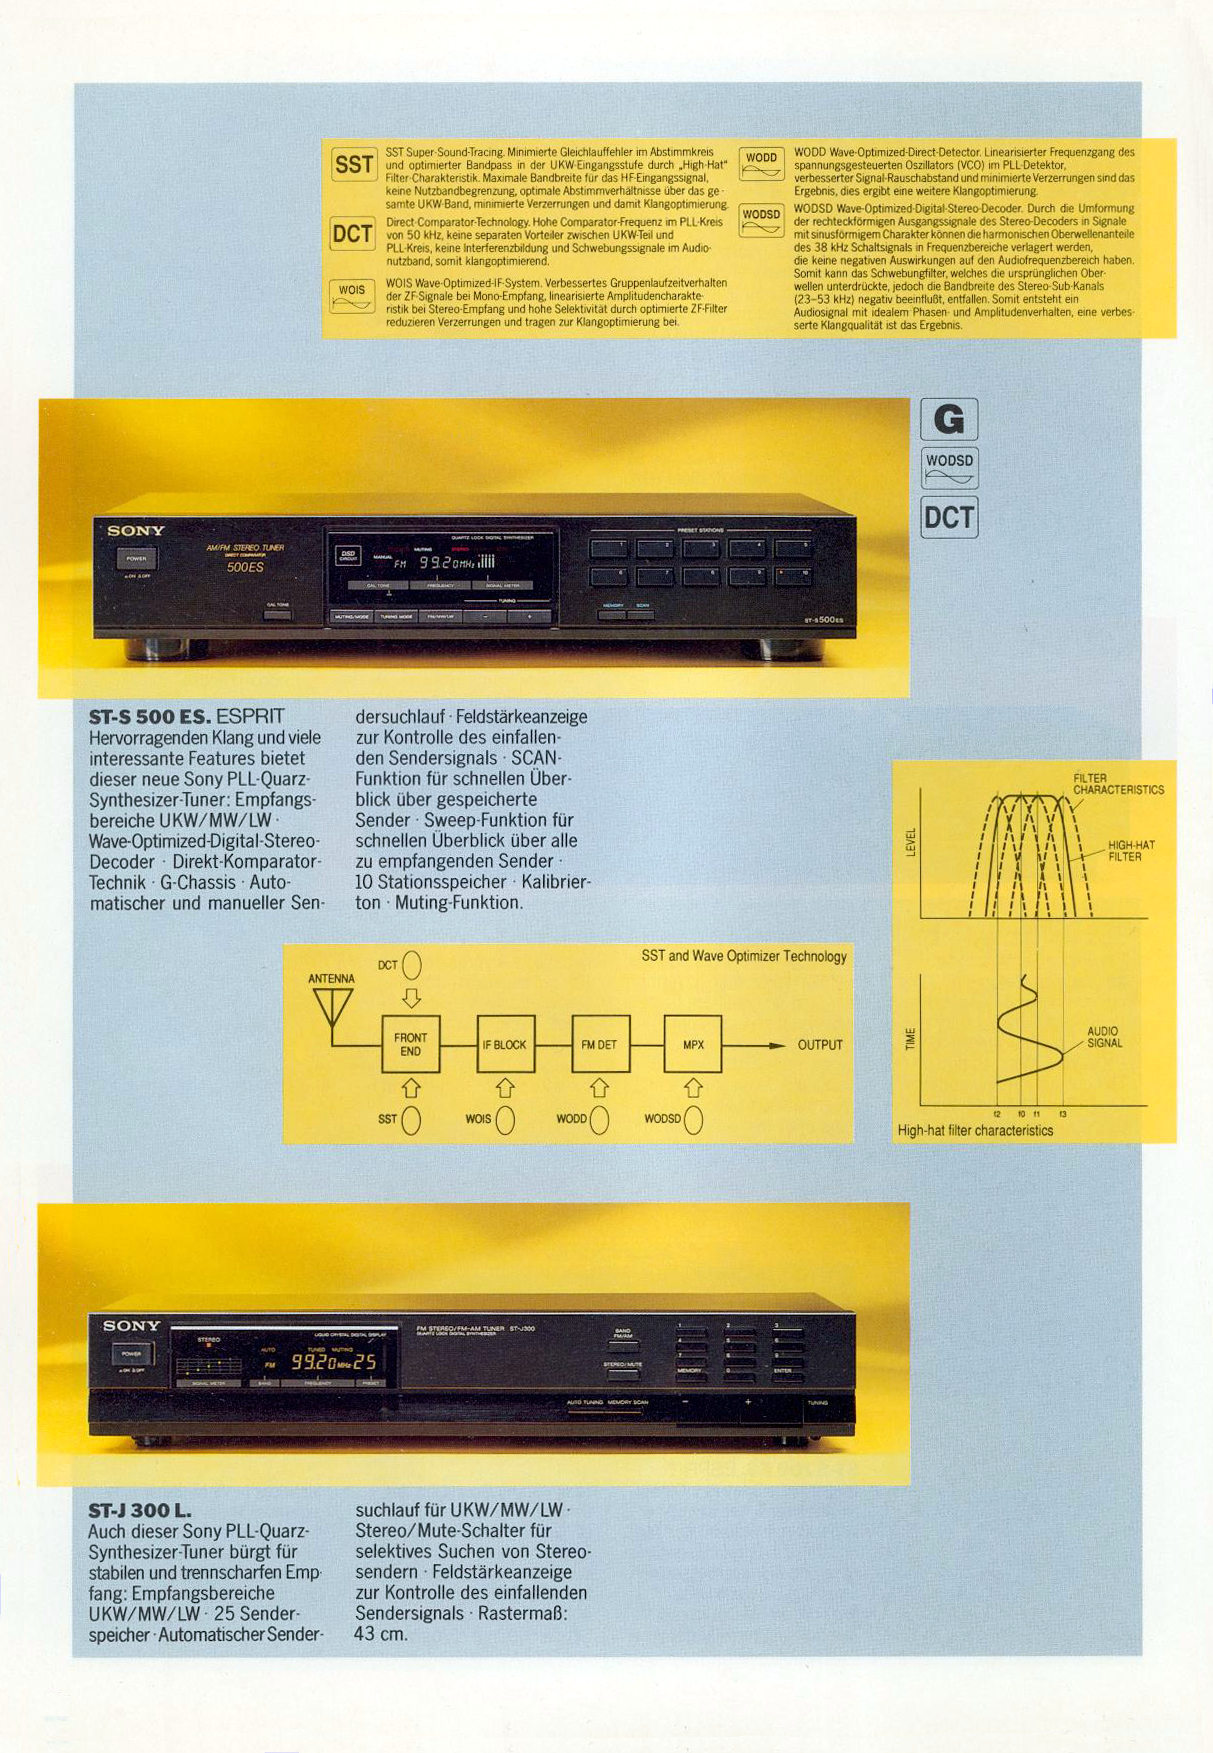 Sony ST-J 300L-S-500 ES-Prospekt-1988.jpg